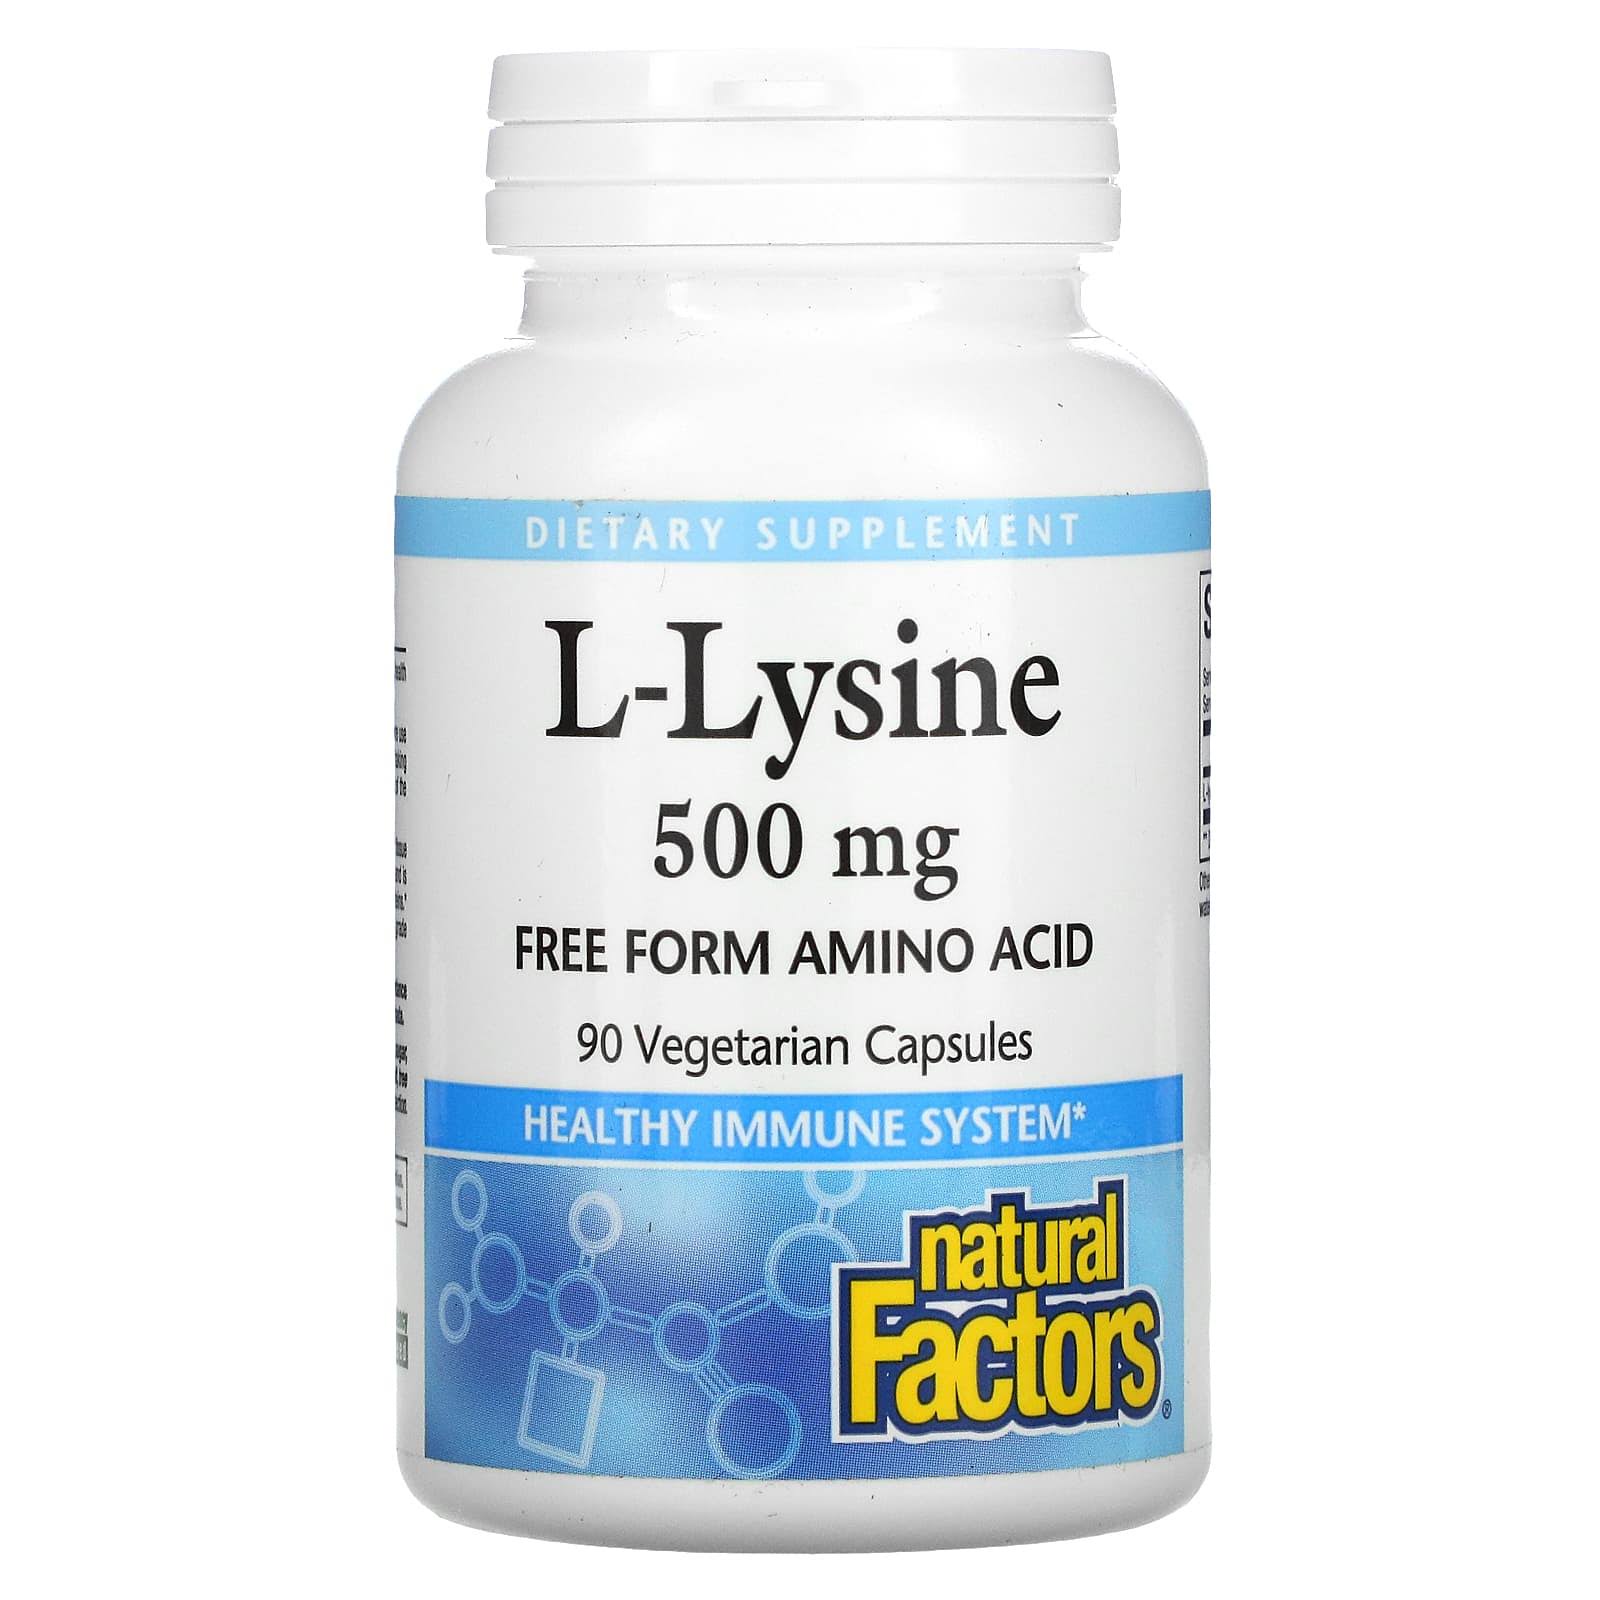 Natural Factors L-lysine Supplement - 90 Vcaps